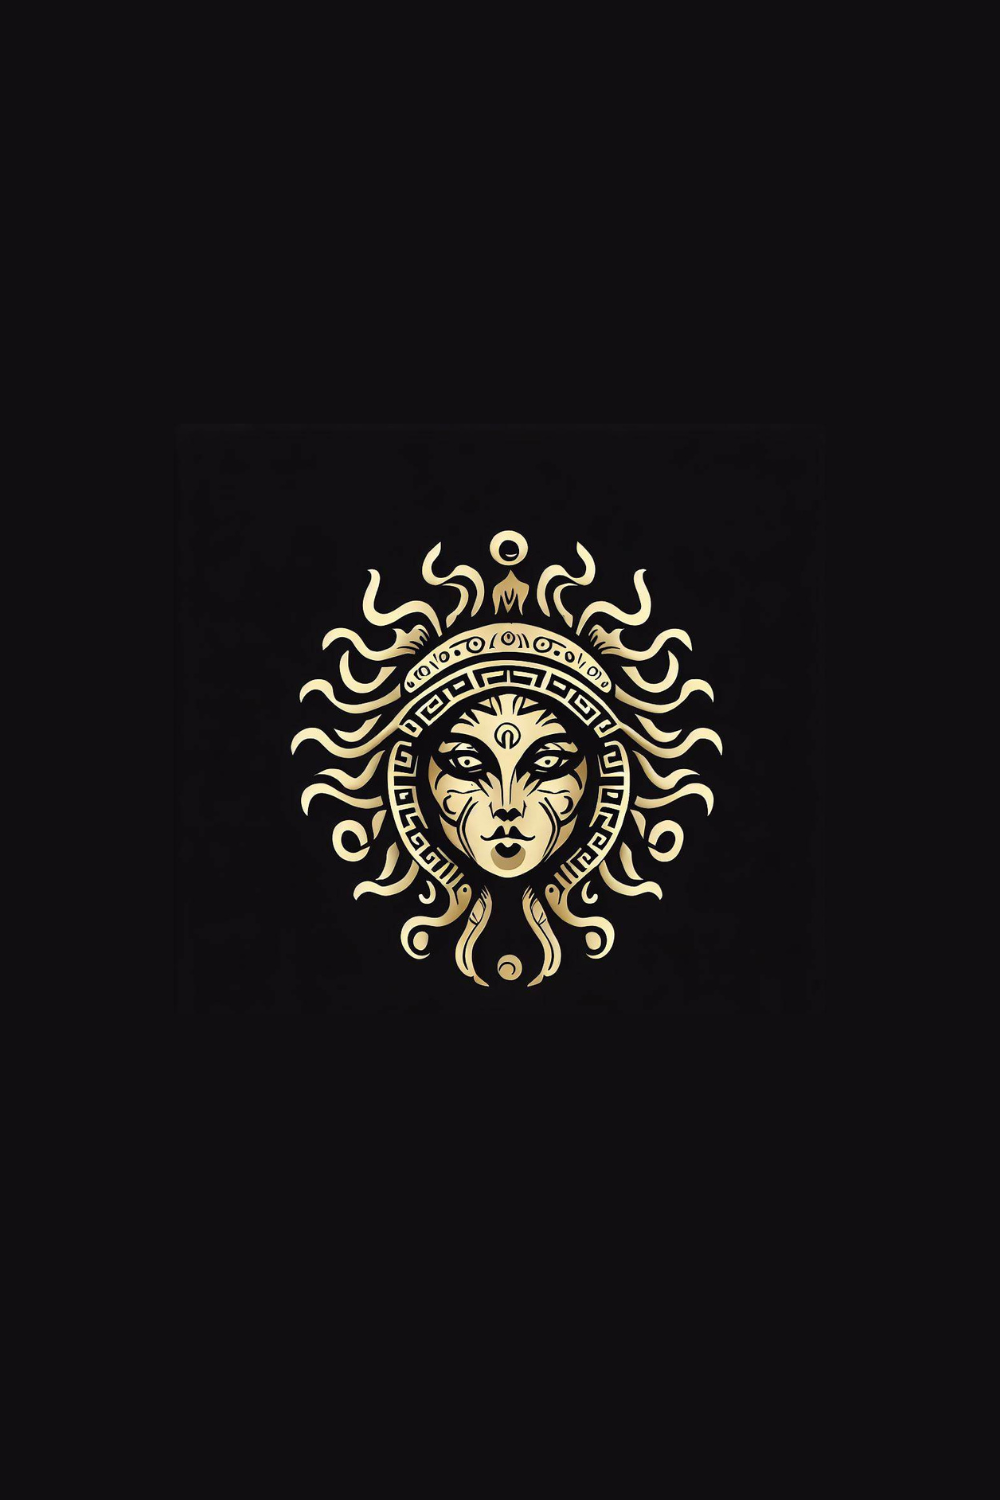 Medusa logo pinterest preview image.